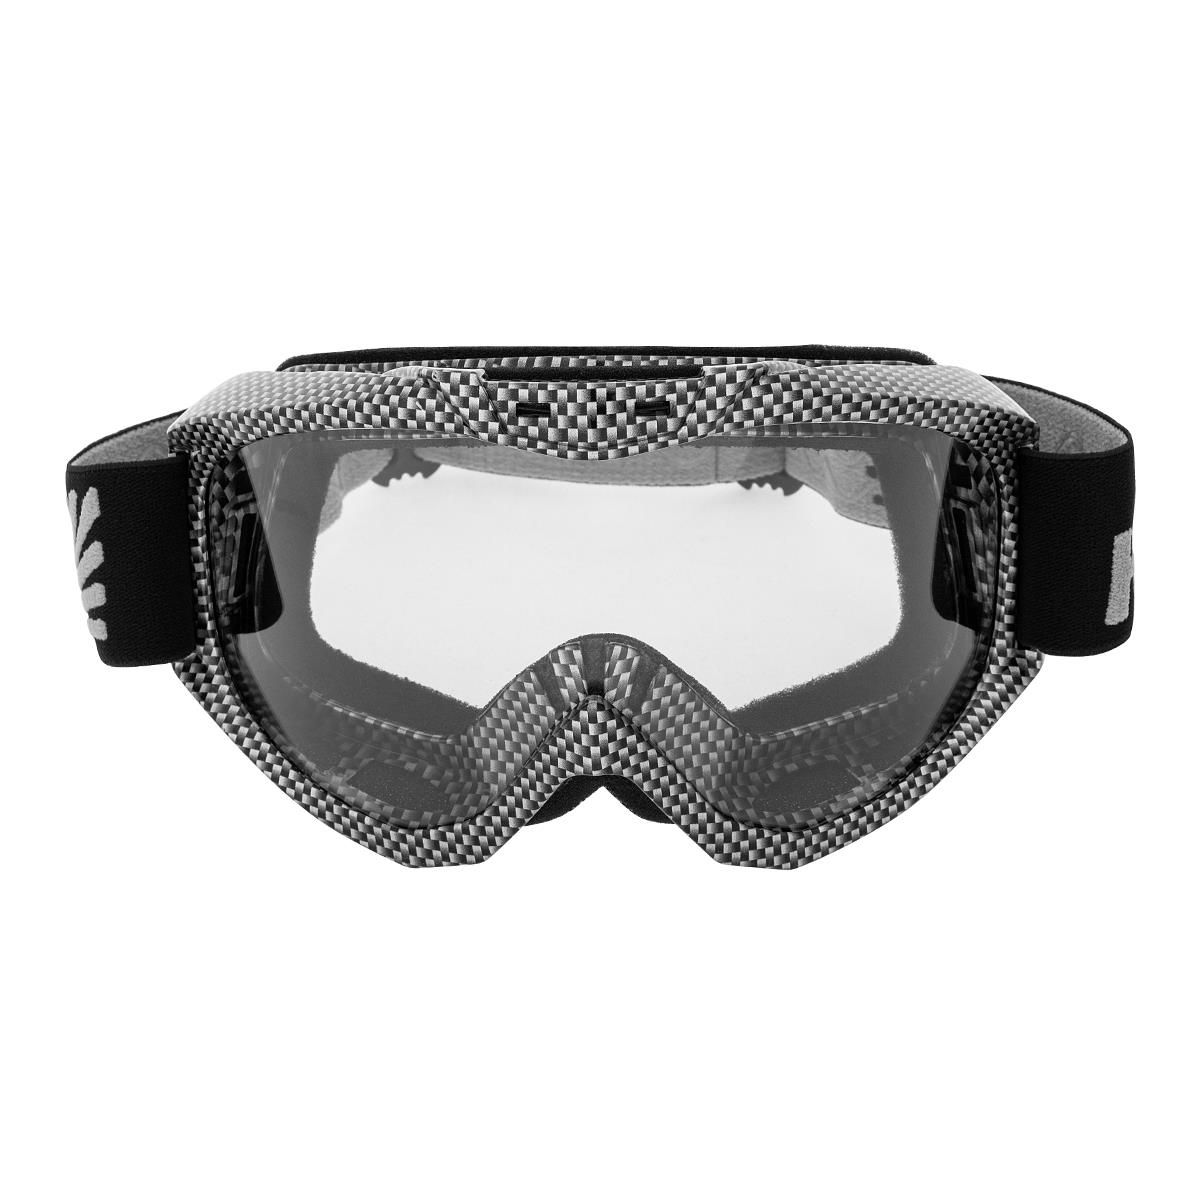 Очки горнолыжные HS-MT-001-C Helios очки для плавания взрослые uv защита